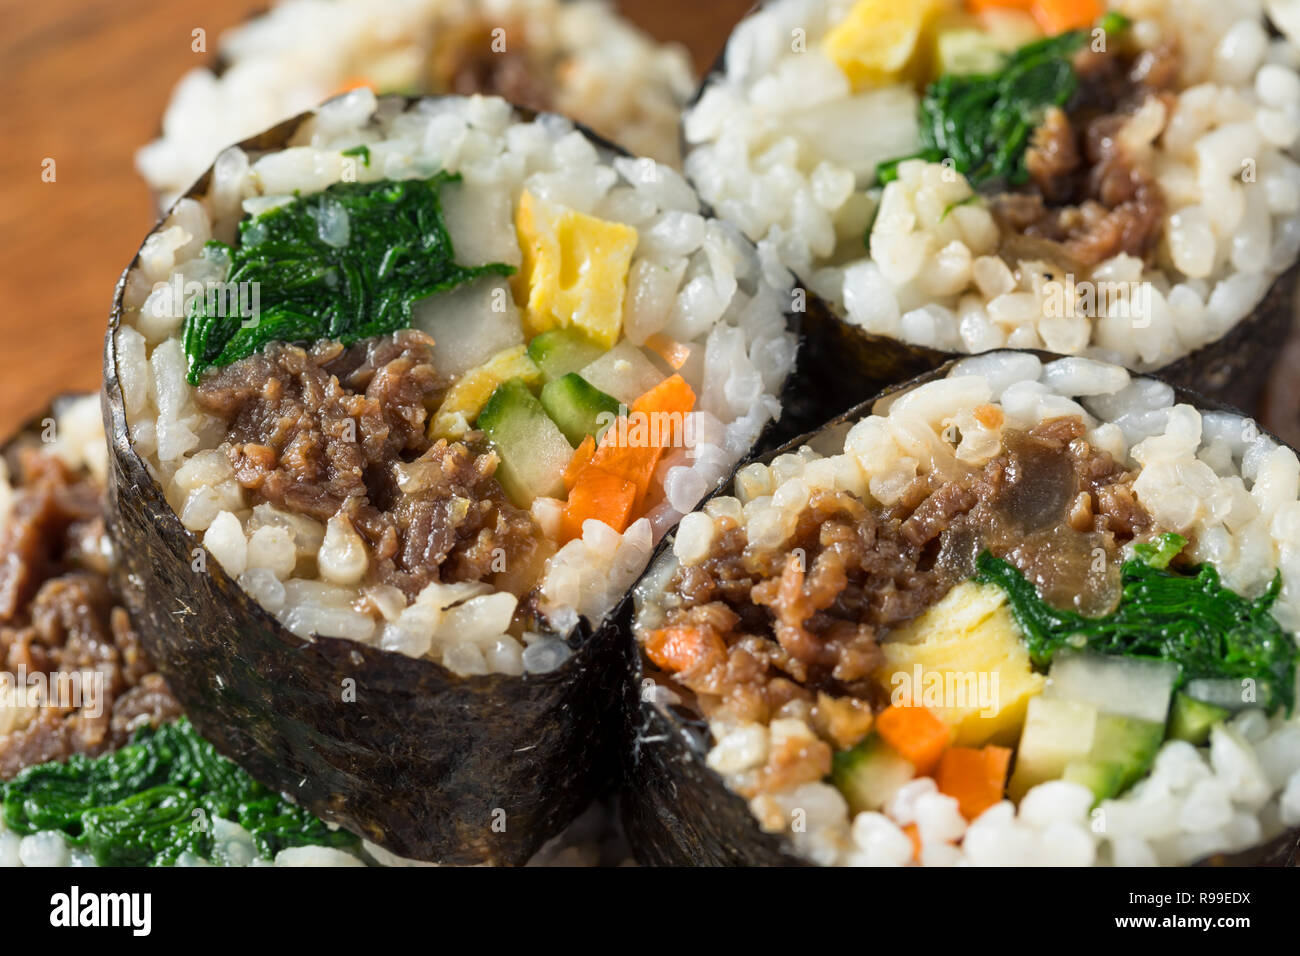 Homemade Korean Kimbap Rice Rolls with Beef and Veggies Stock Photo